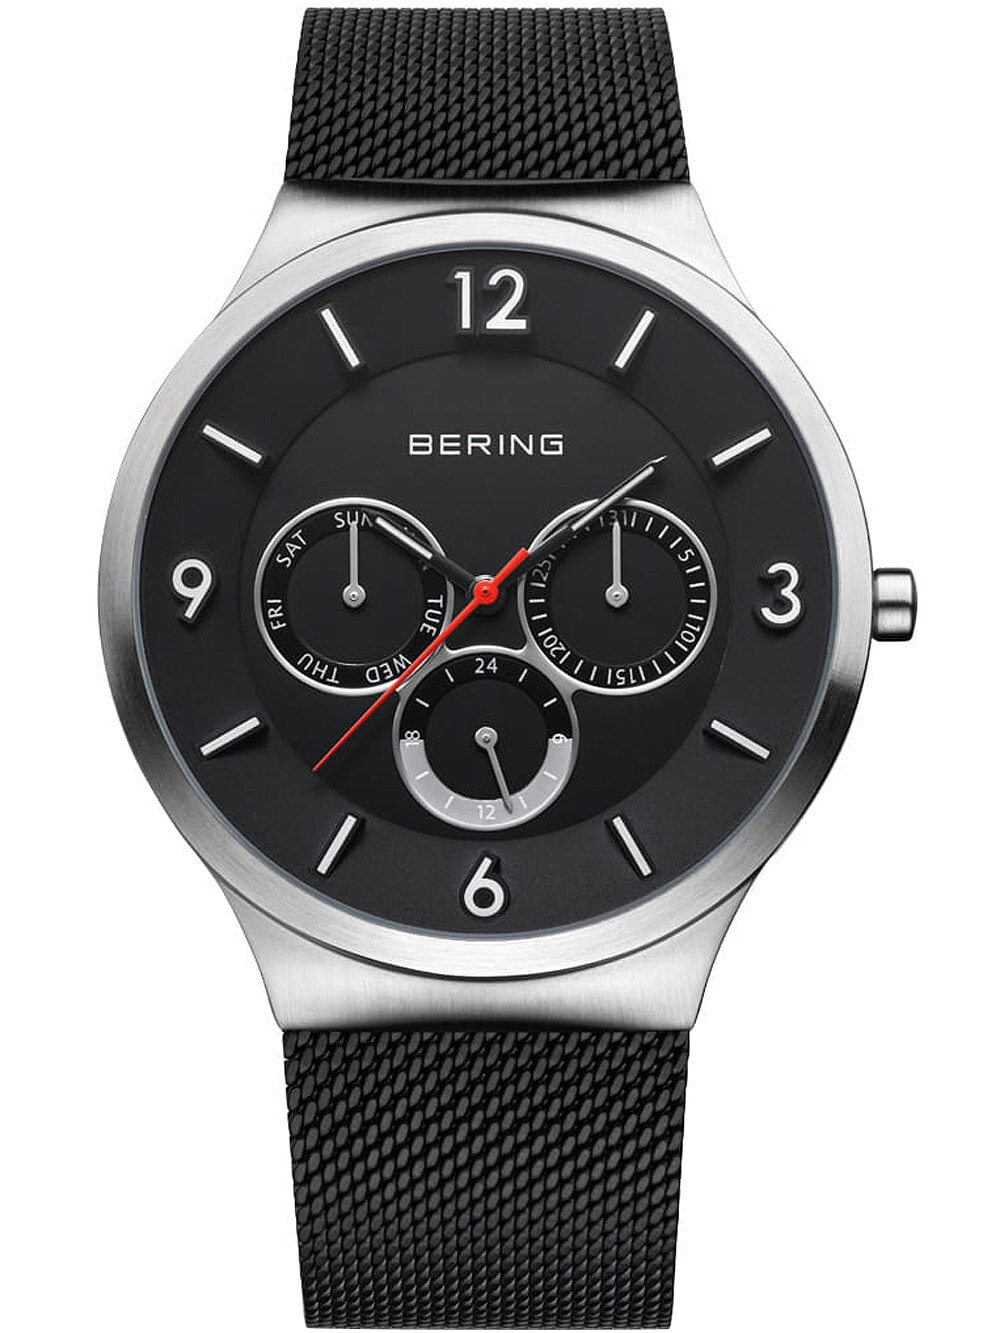 Мужские наручные часы с черным браслетом Bering 33441-102 Classic mens 41mm 3ATM